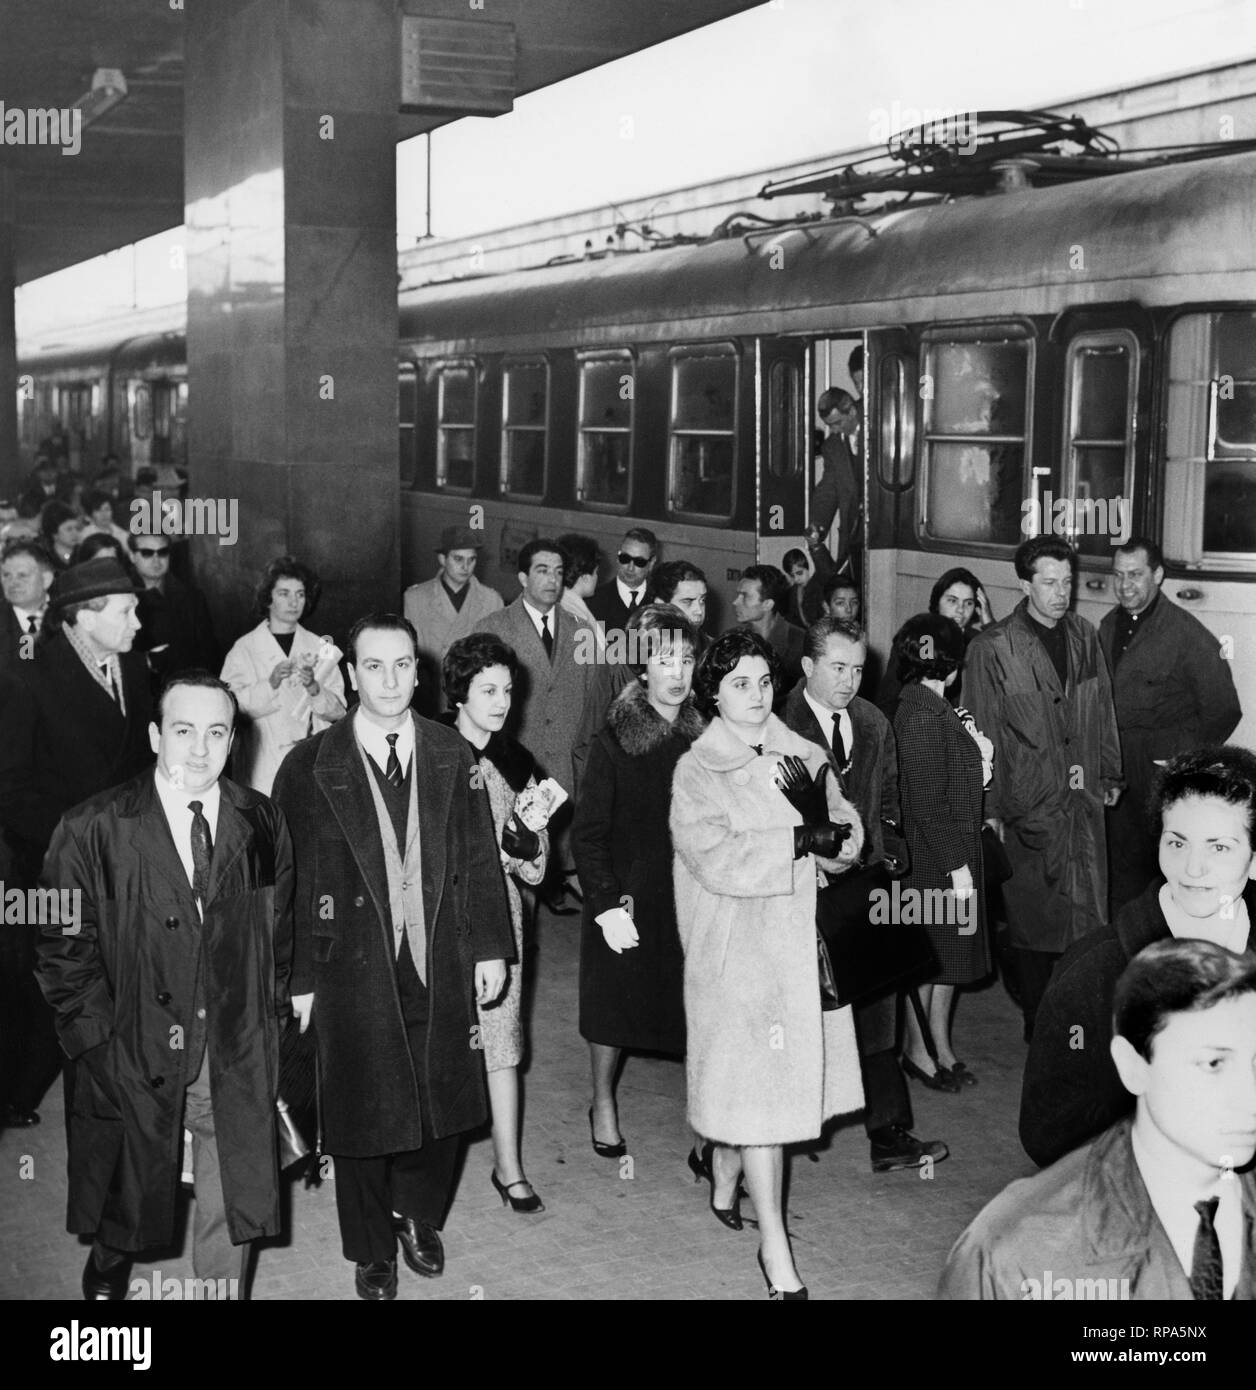 Les travailleurs de la station, Italie 1962 Banque D'Images